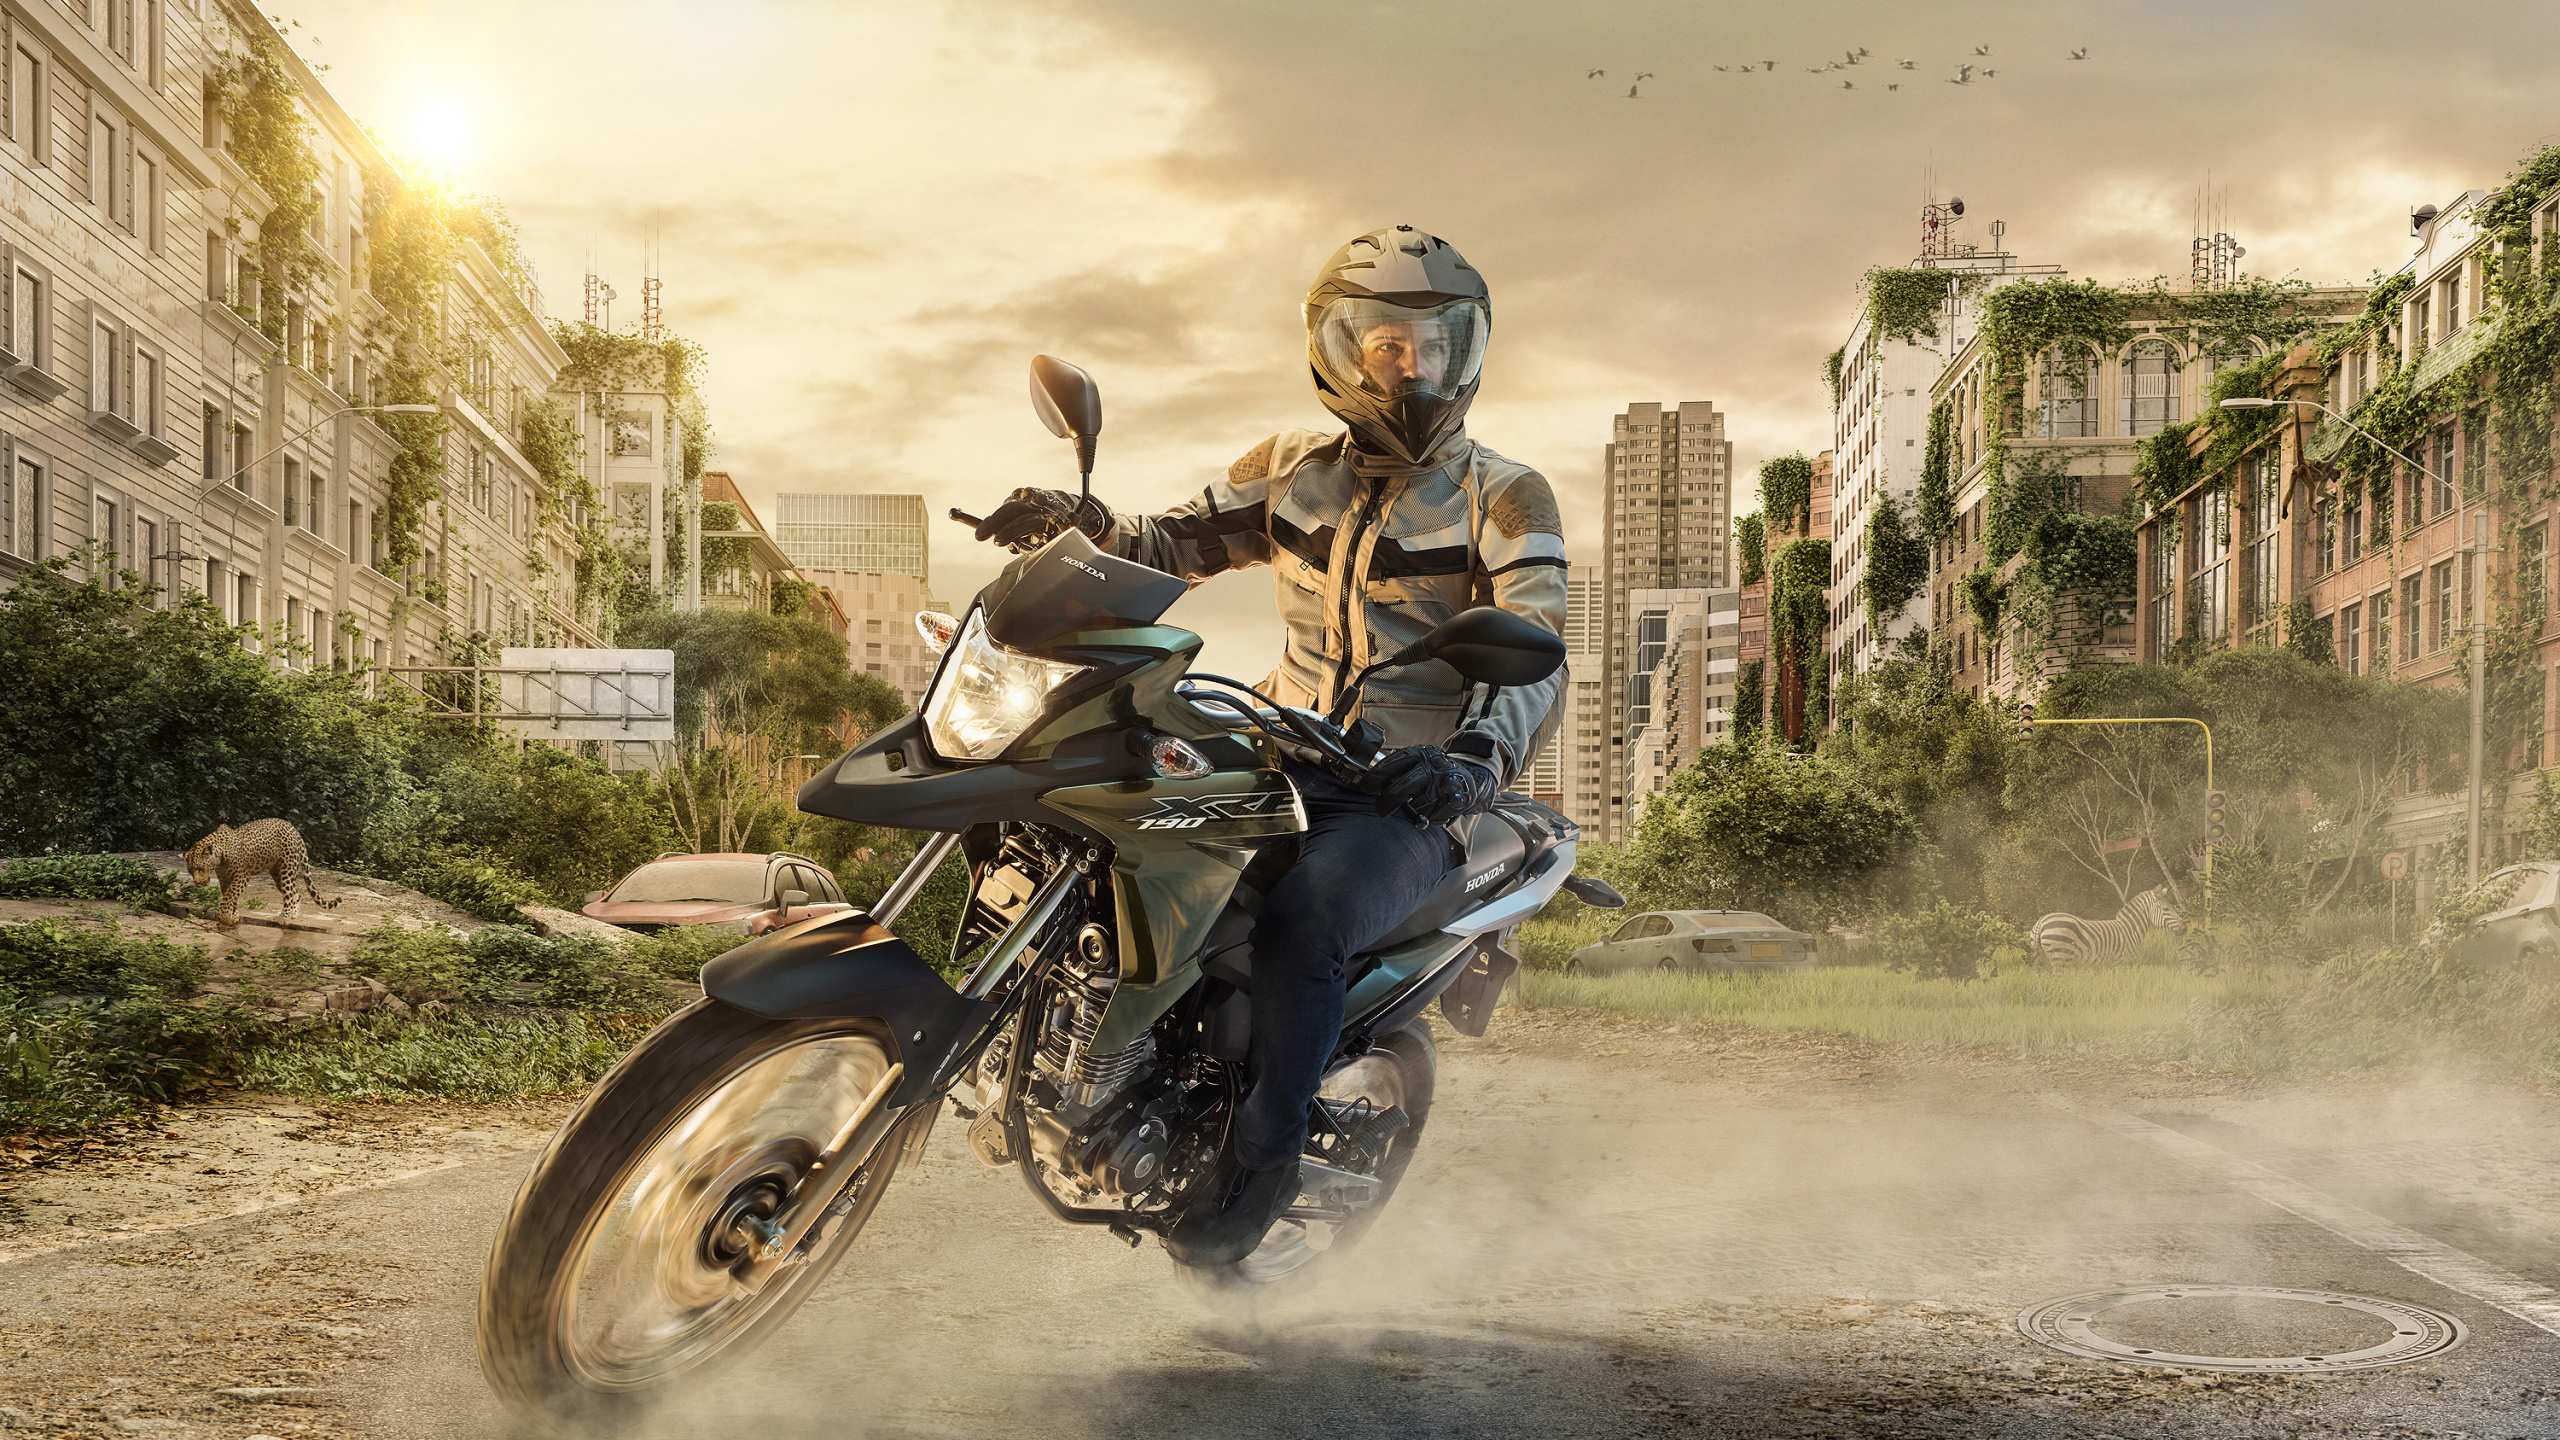 Hombre de Chaqueta Negra Montando en Motocicleta Negra. Wallpaper in 2560x1440 Resolution